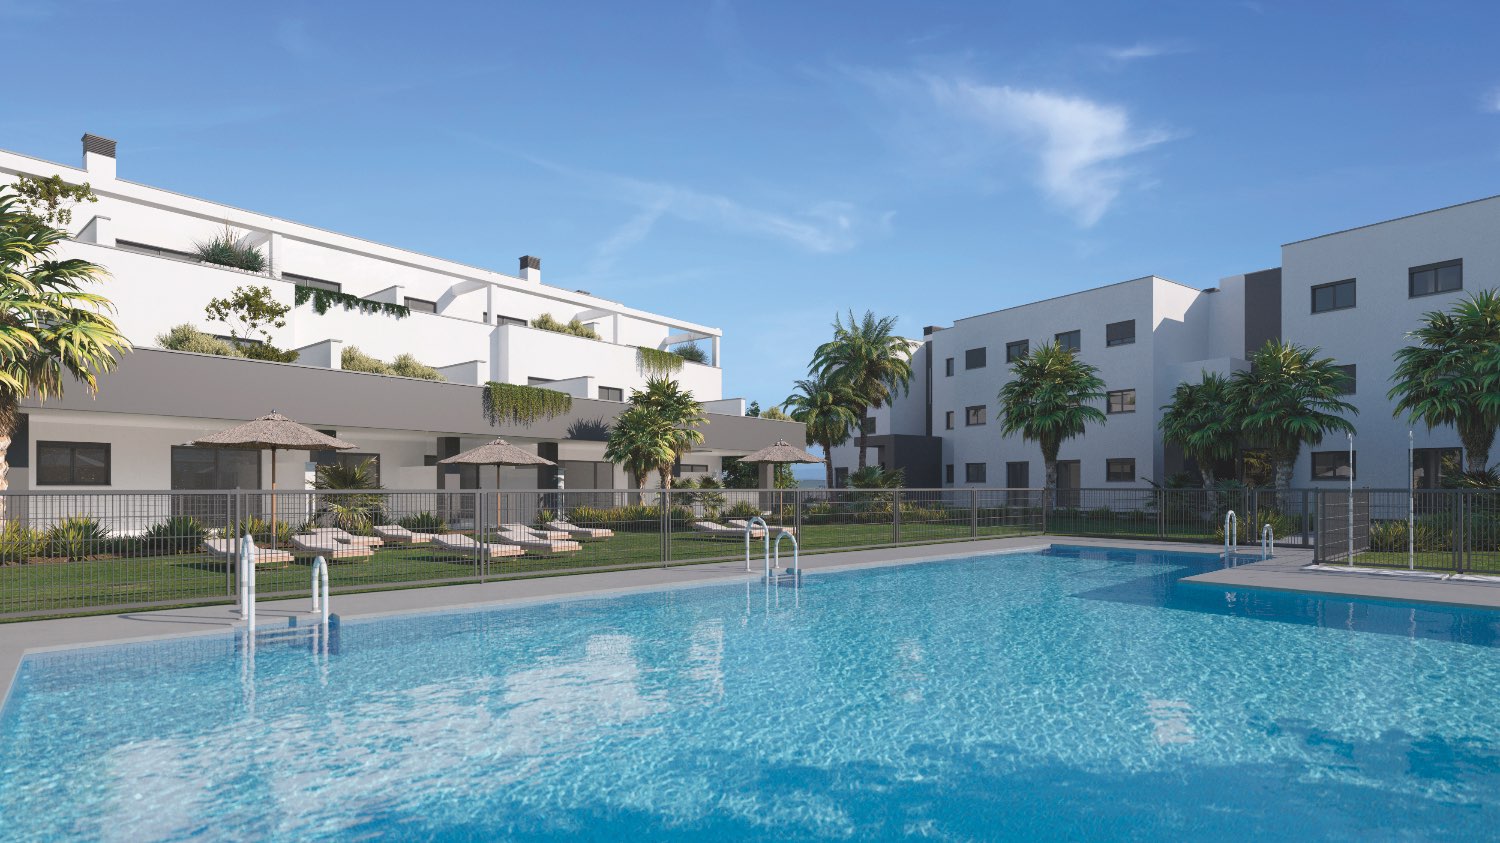 Nuevo apartamento de promoción en Estepona - Costa del Sol